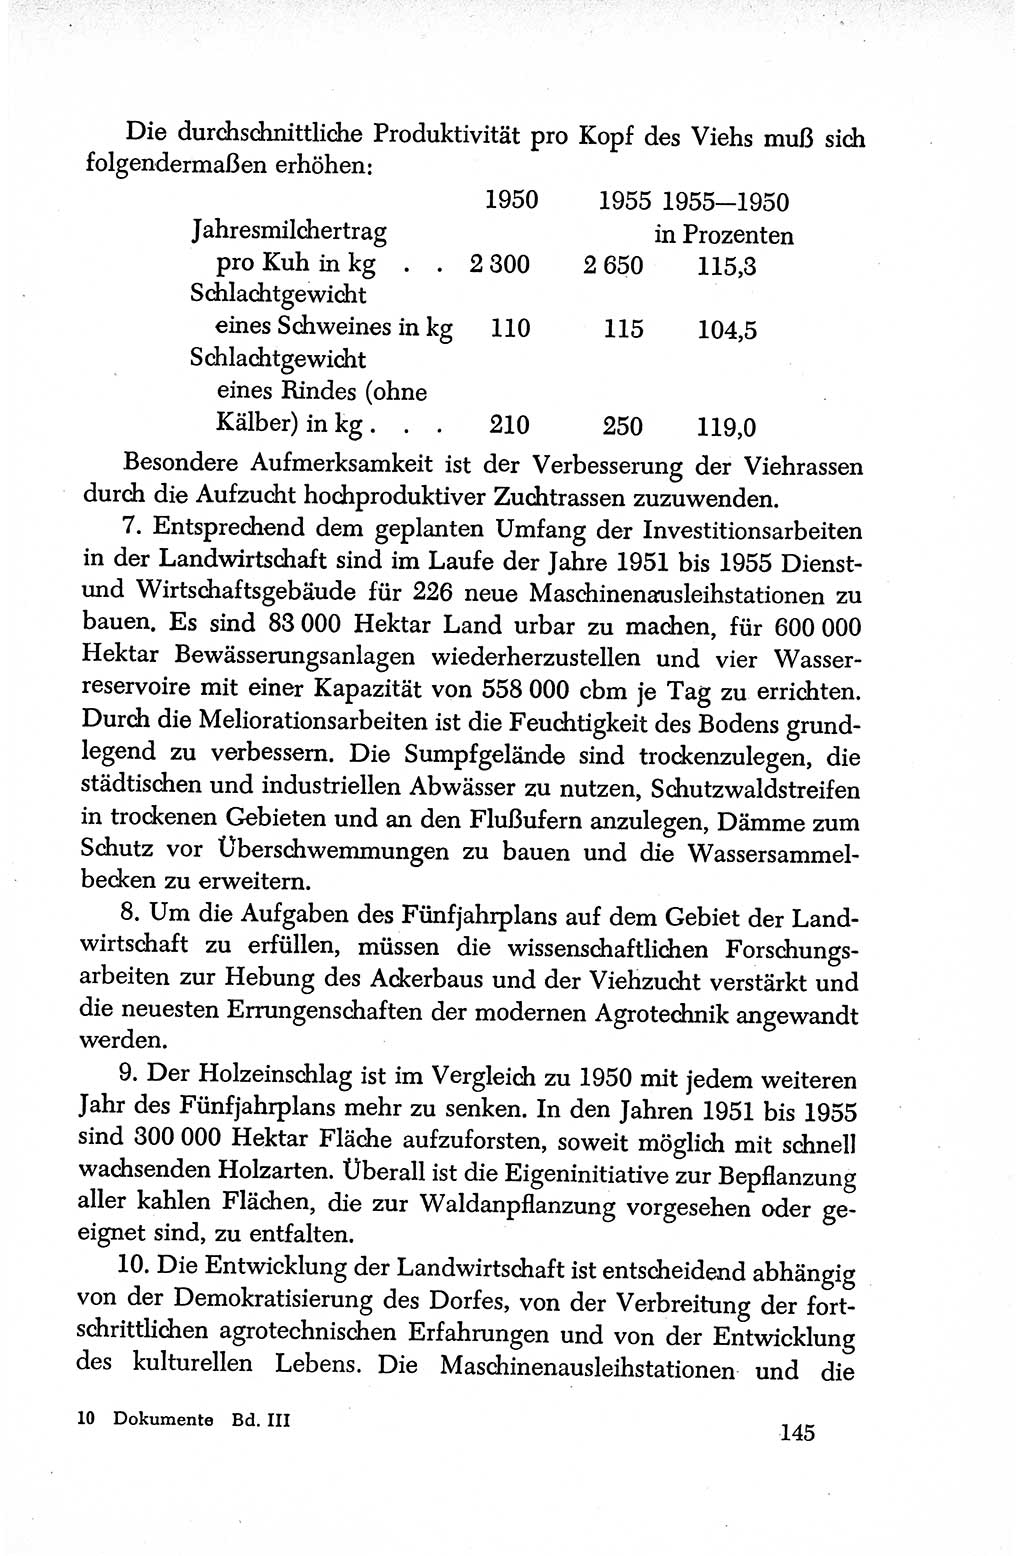 Dokumente der Sozialistischen Einheitspartei Deutschlands (SED) [Deutsche Demokratische Republik (DDR)] 1950-1952, Seite 145 (Dok. SED DDR 1950-1952, S. 145)